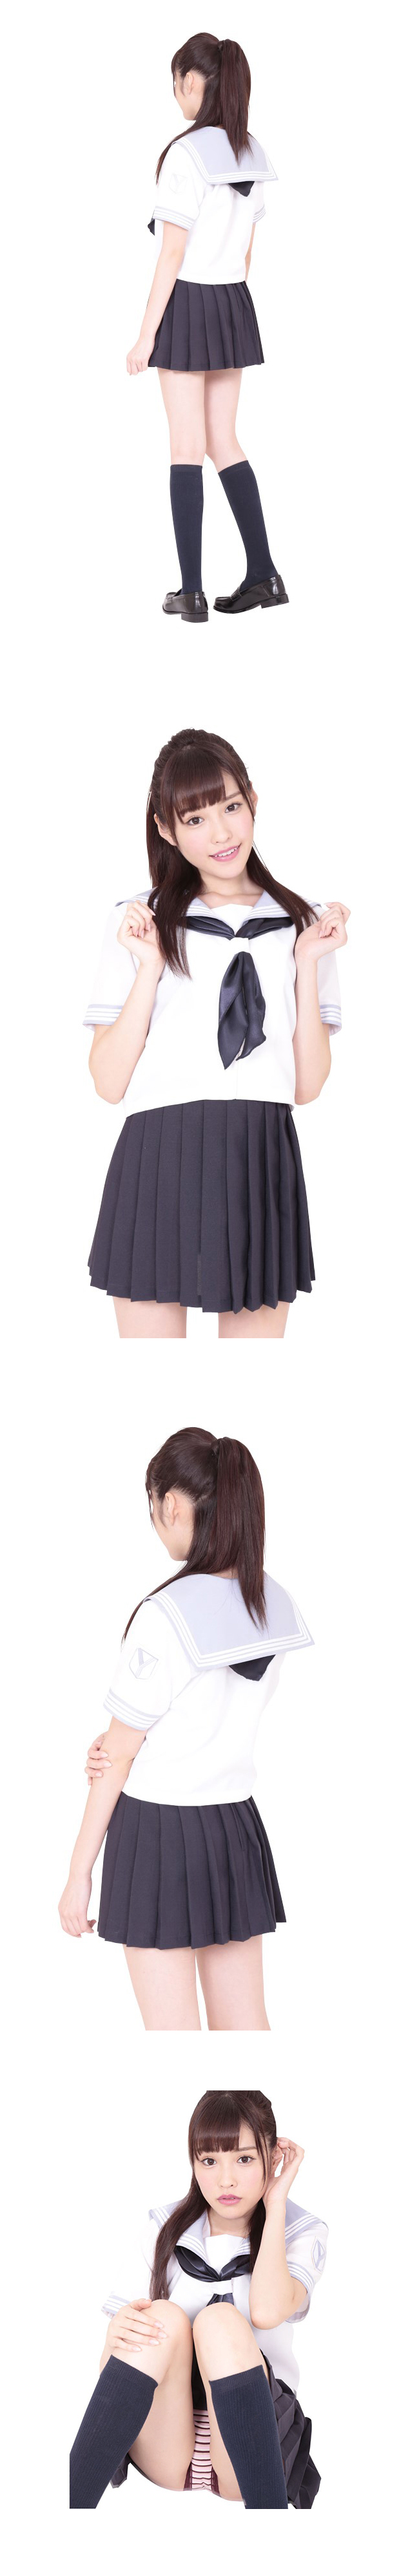 [일본 직수입] 신 고등학교 여름 특별 유니폼 (神高校夏用特別制服) 니포리기프트 (WCK)